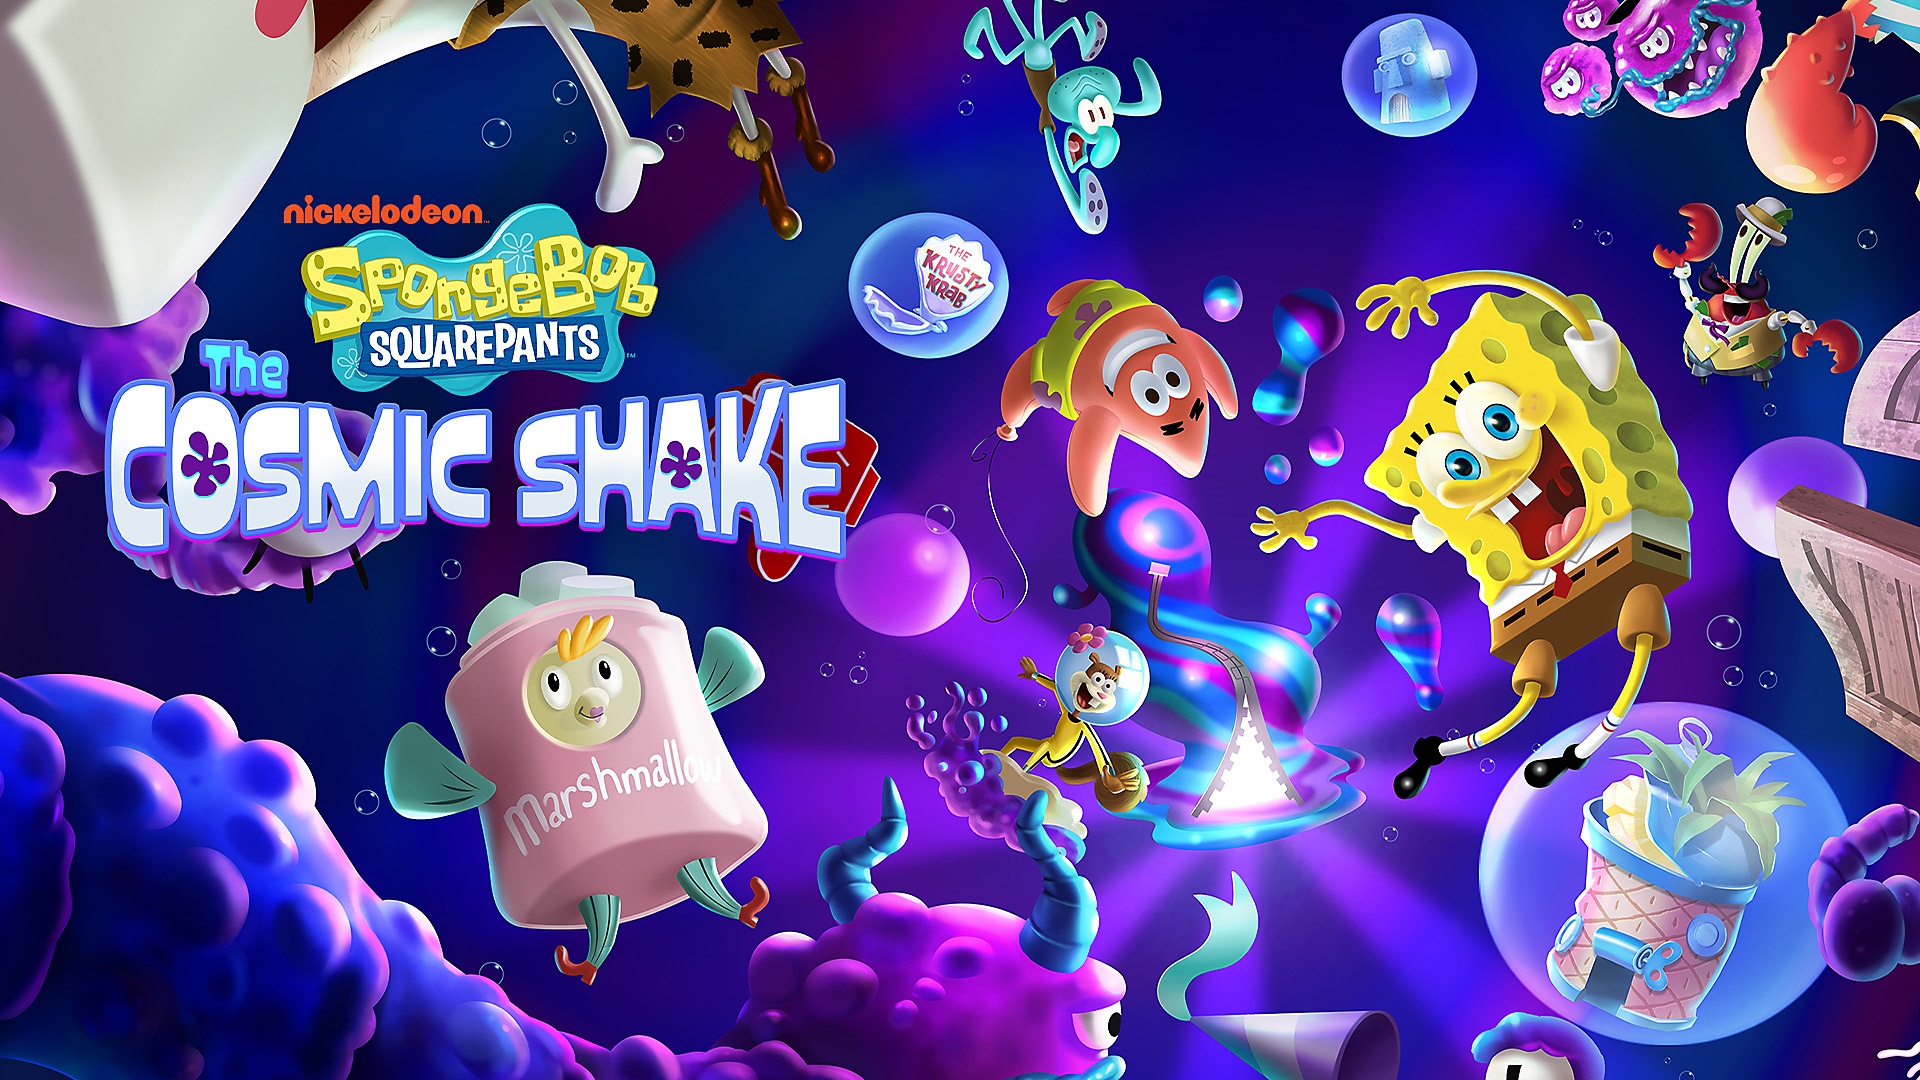 Bob Esponja, Patrick e outros personagens flutuam no cosmo subaquático de SpongeBob SquarePants: The Cosmic Shake para PS4 e PS5